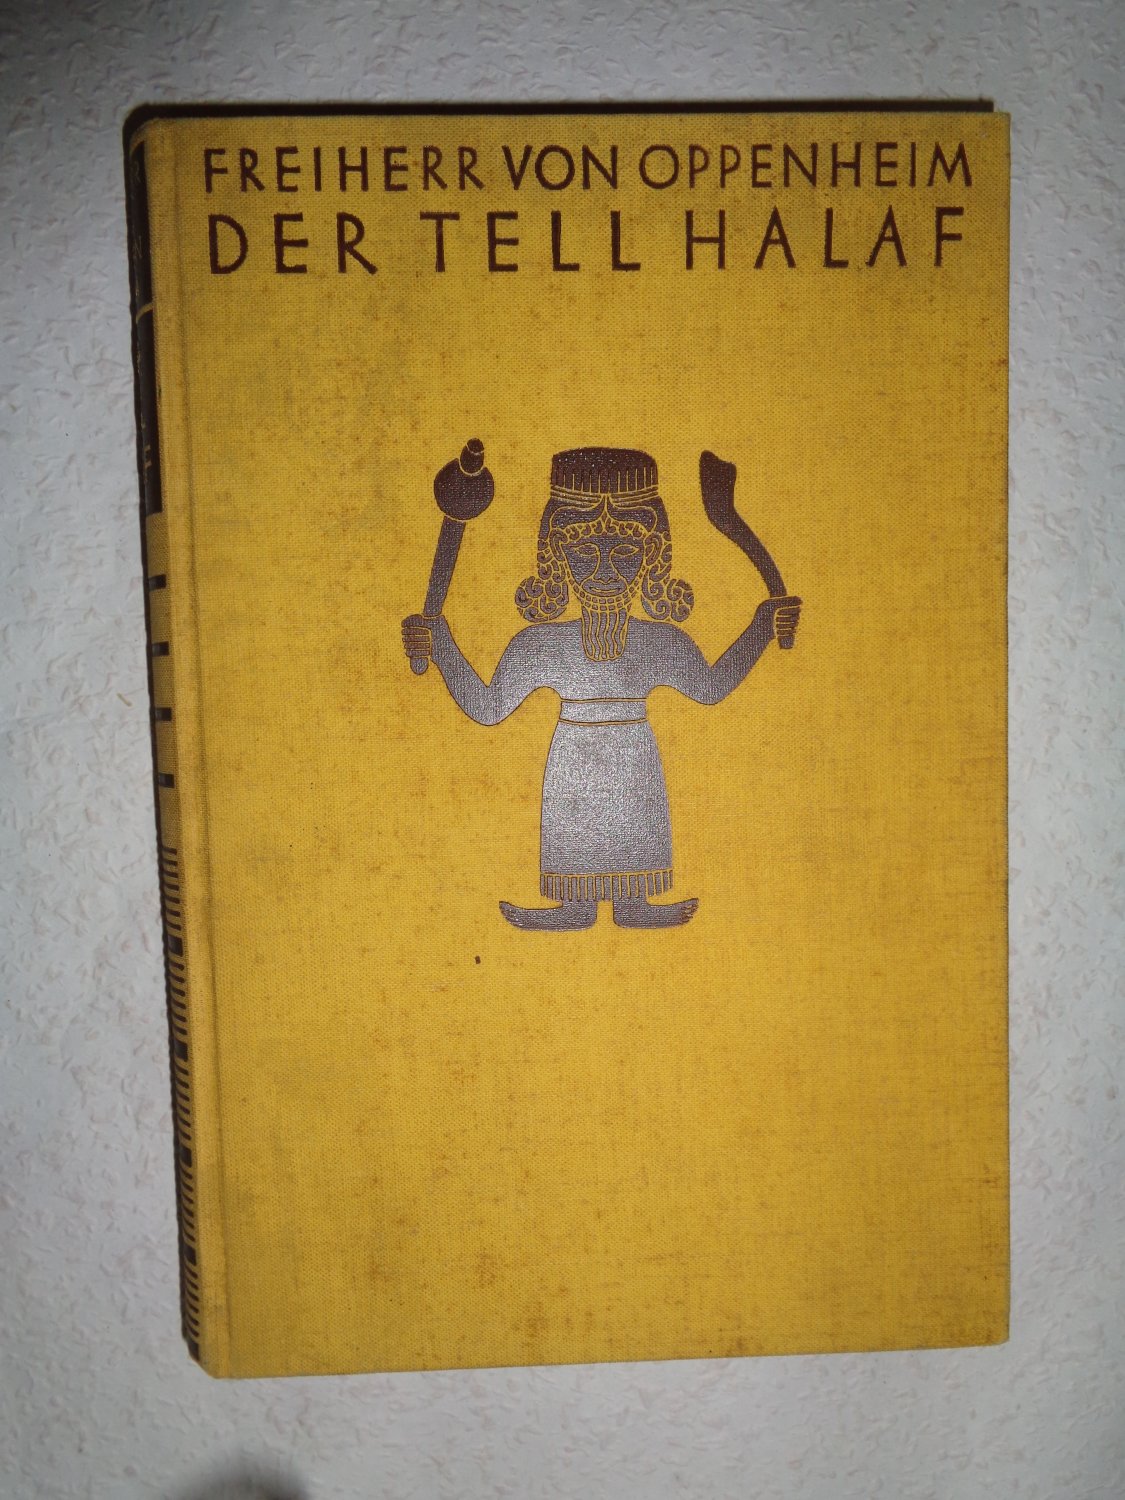 Der Tell Halaf und sein Ausgraber Max Freiherr von Oppenheim